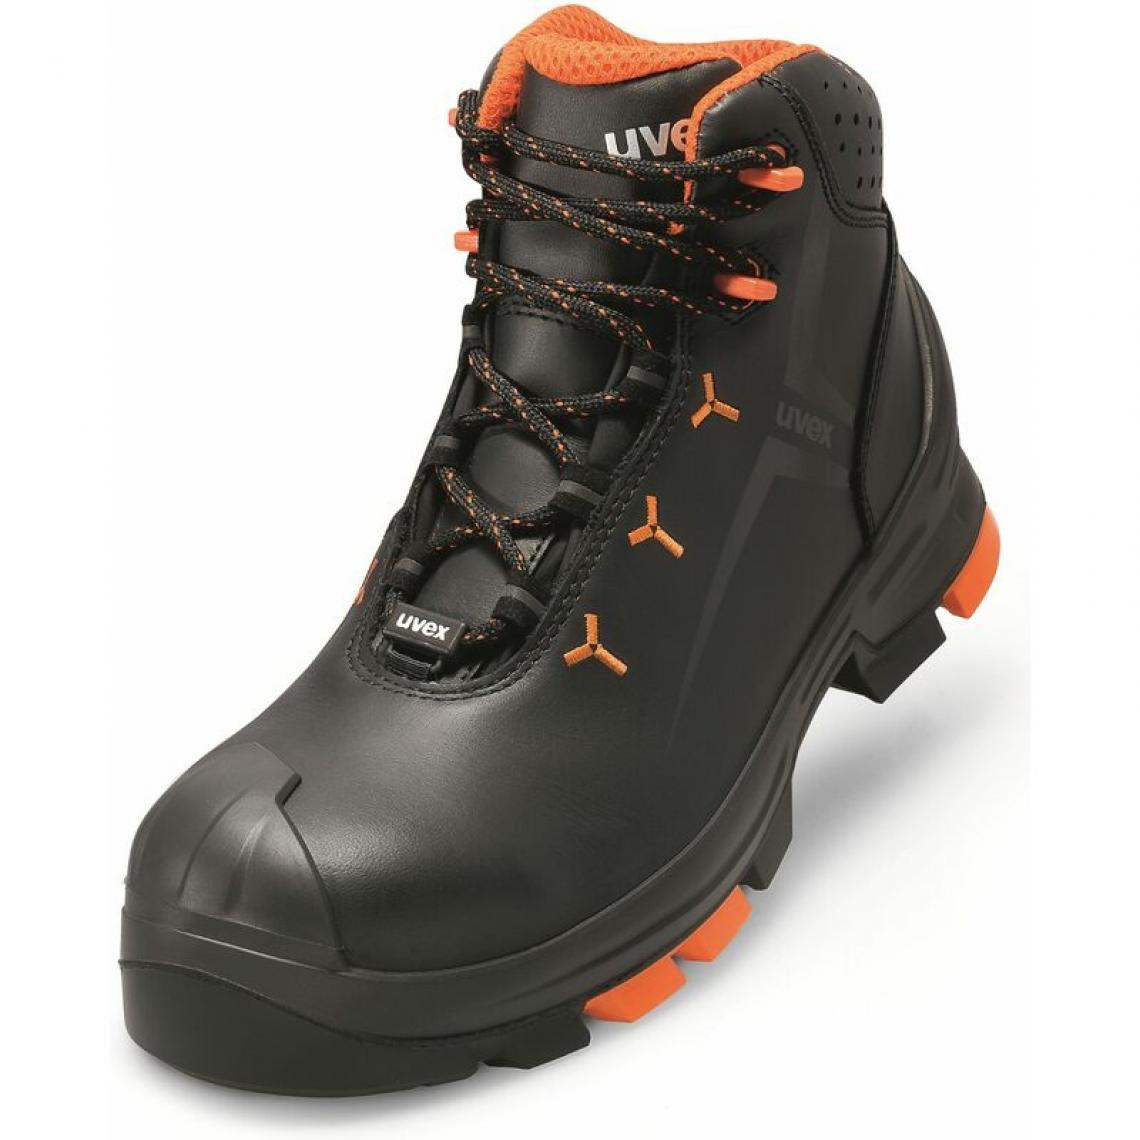 Uvex - uvex 2 Chaussures montantes S3 SRC, T. 40, noir/orange () - Equipement de Protection Individuelle